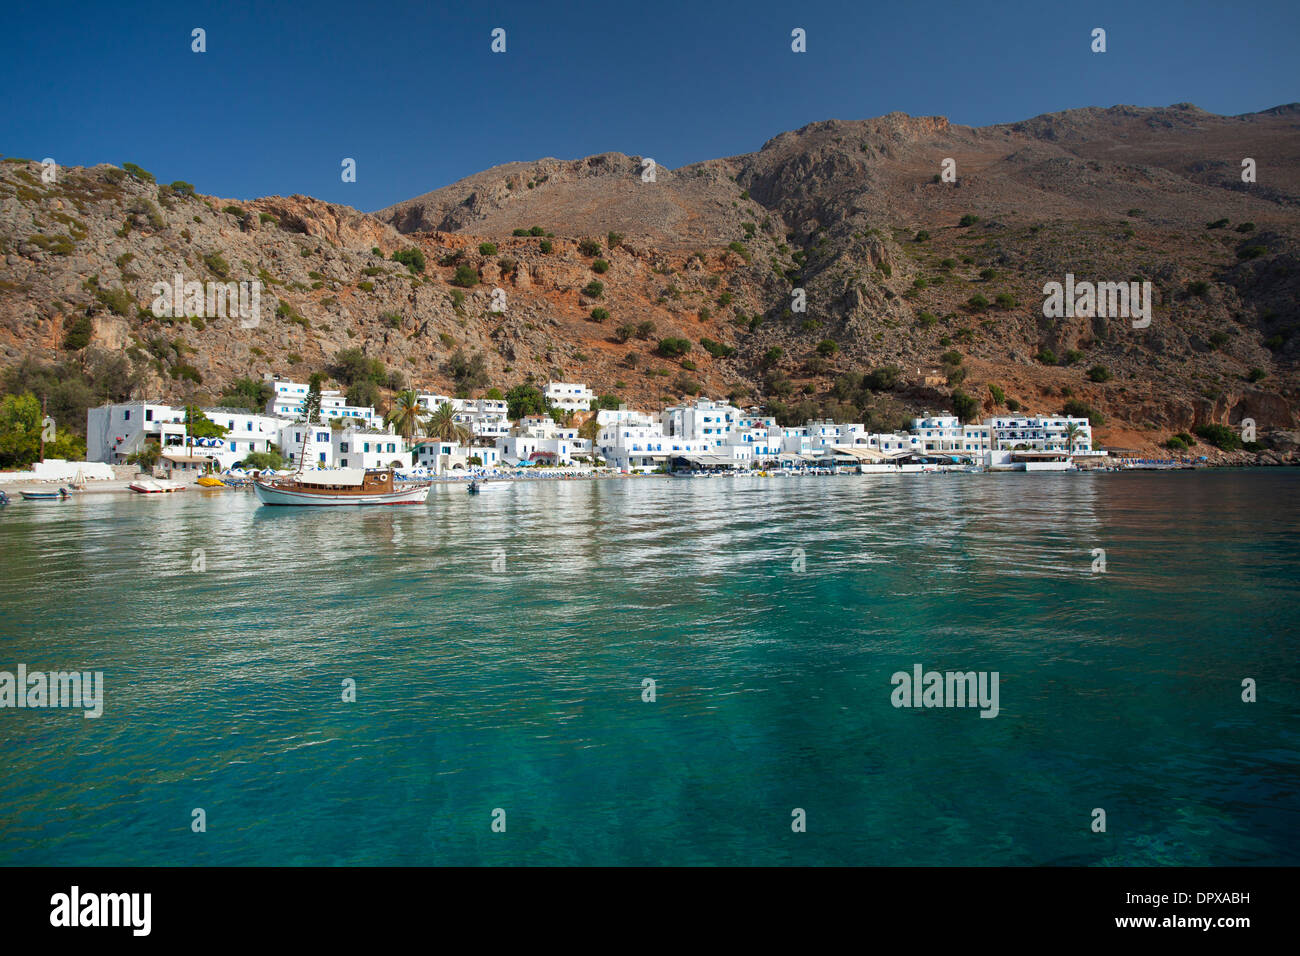 The village of Loutro beneath the White Mountains, Sfakia, Chania District, Crete, Greece. Stock Photo